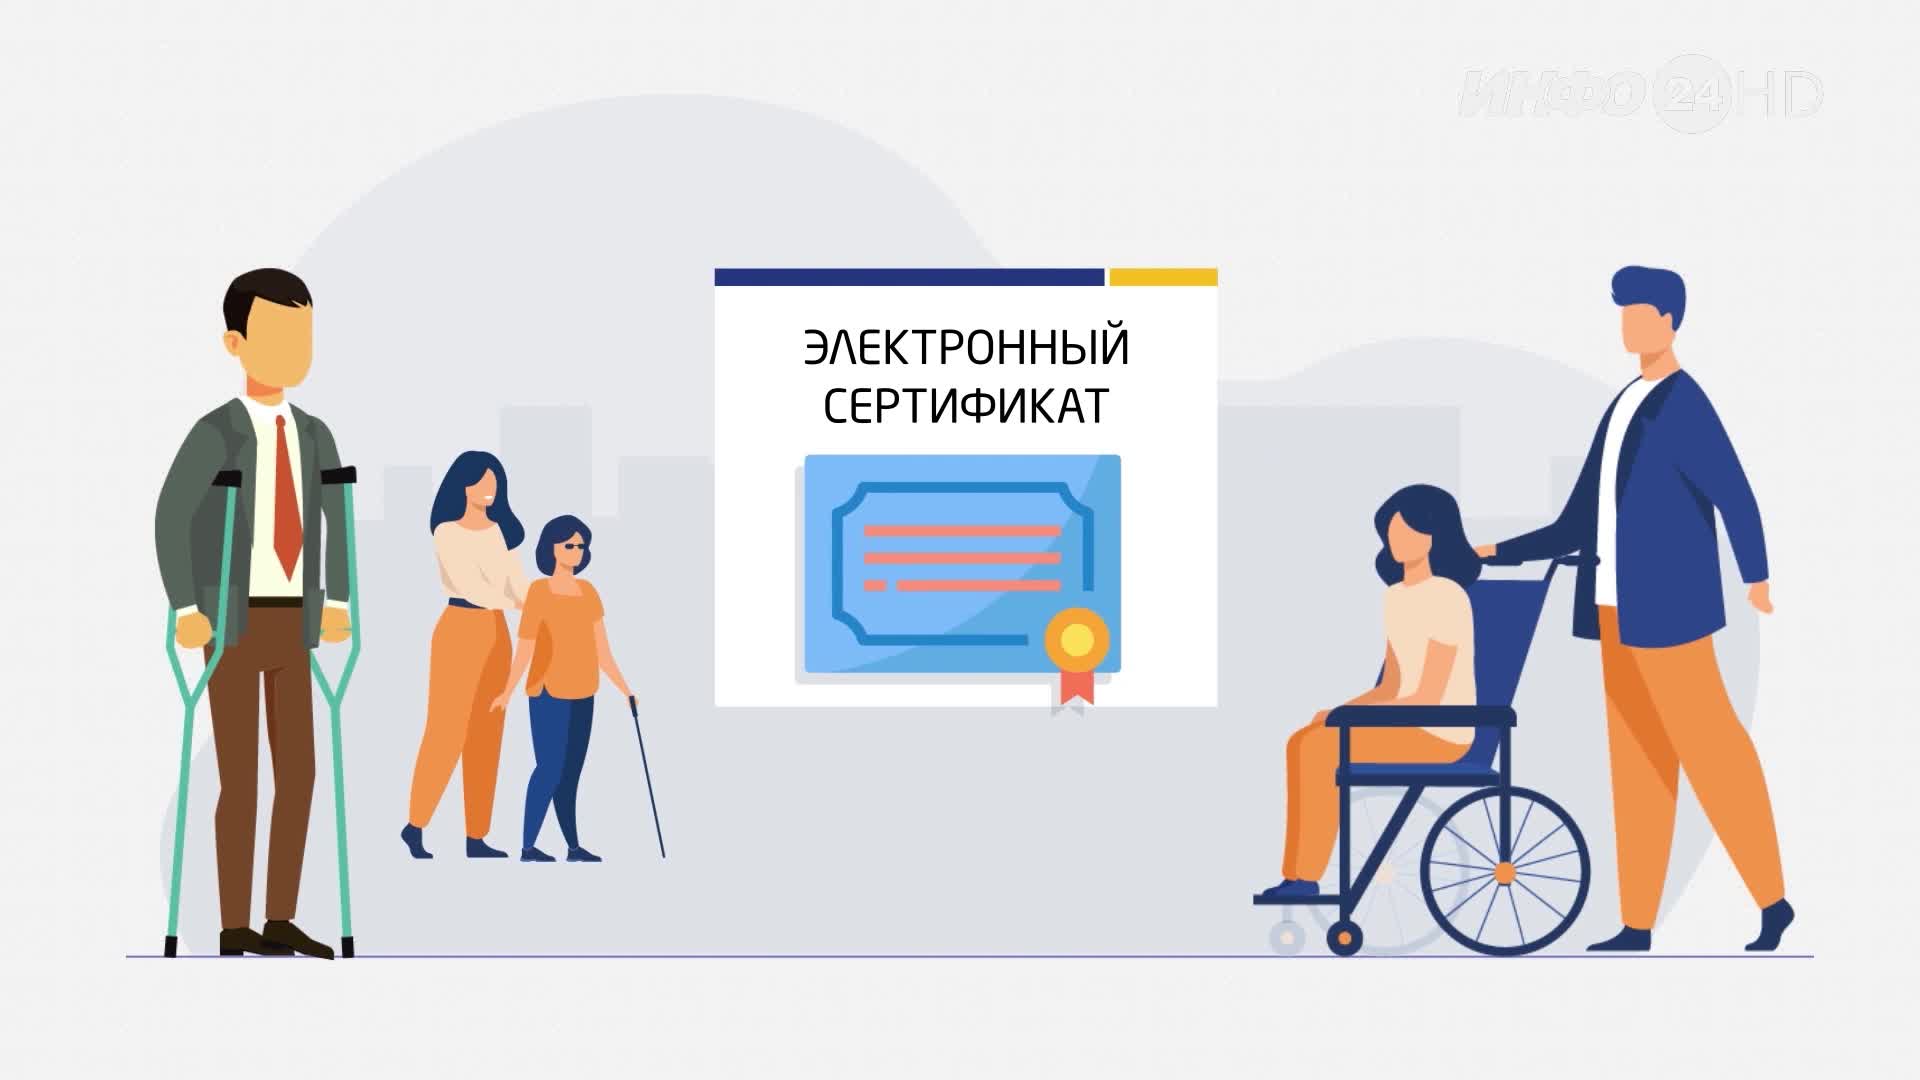 Электронный сертификат для людей с инвалидностью. Зачем он нужен и как работает?